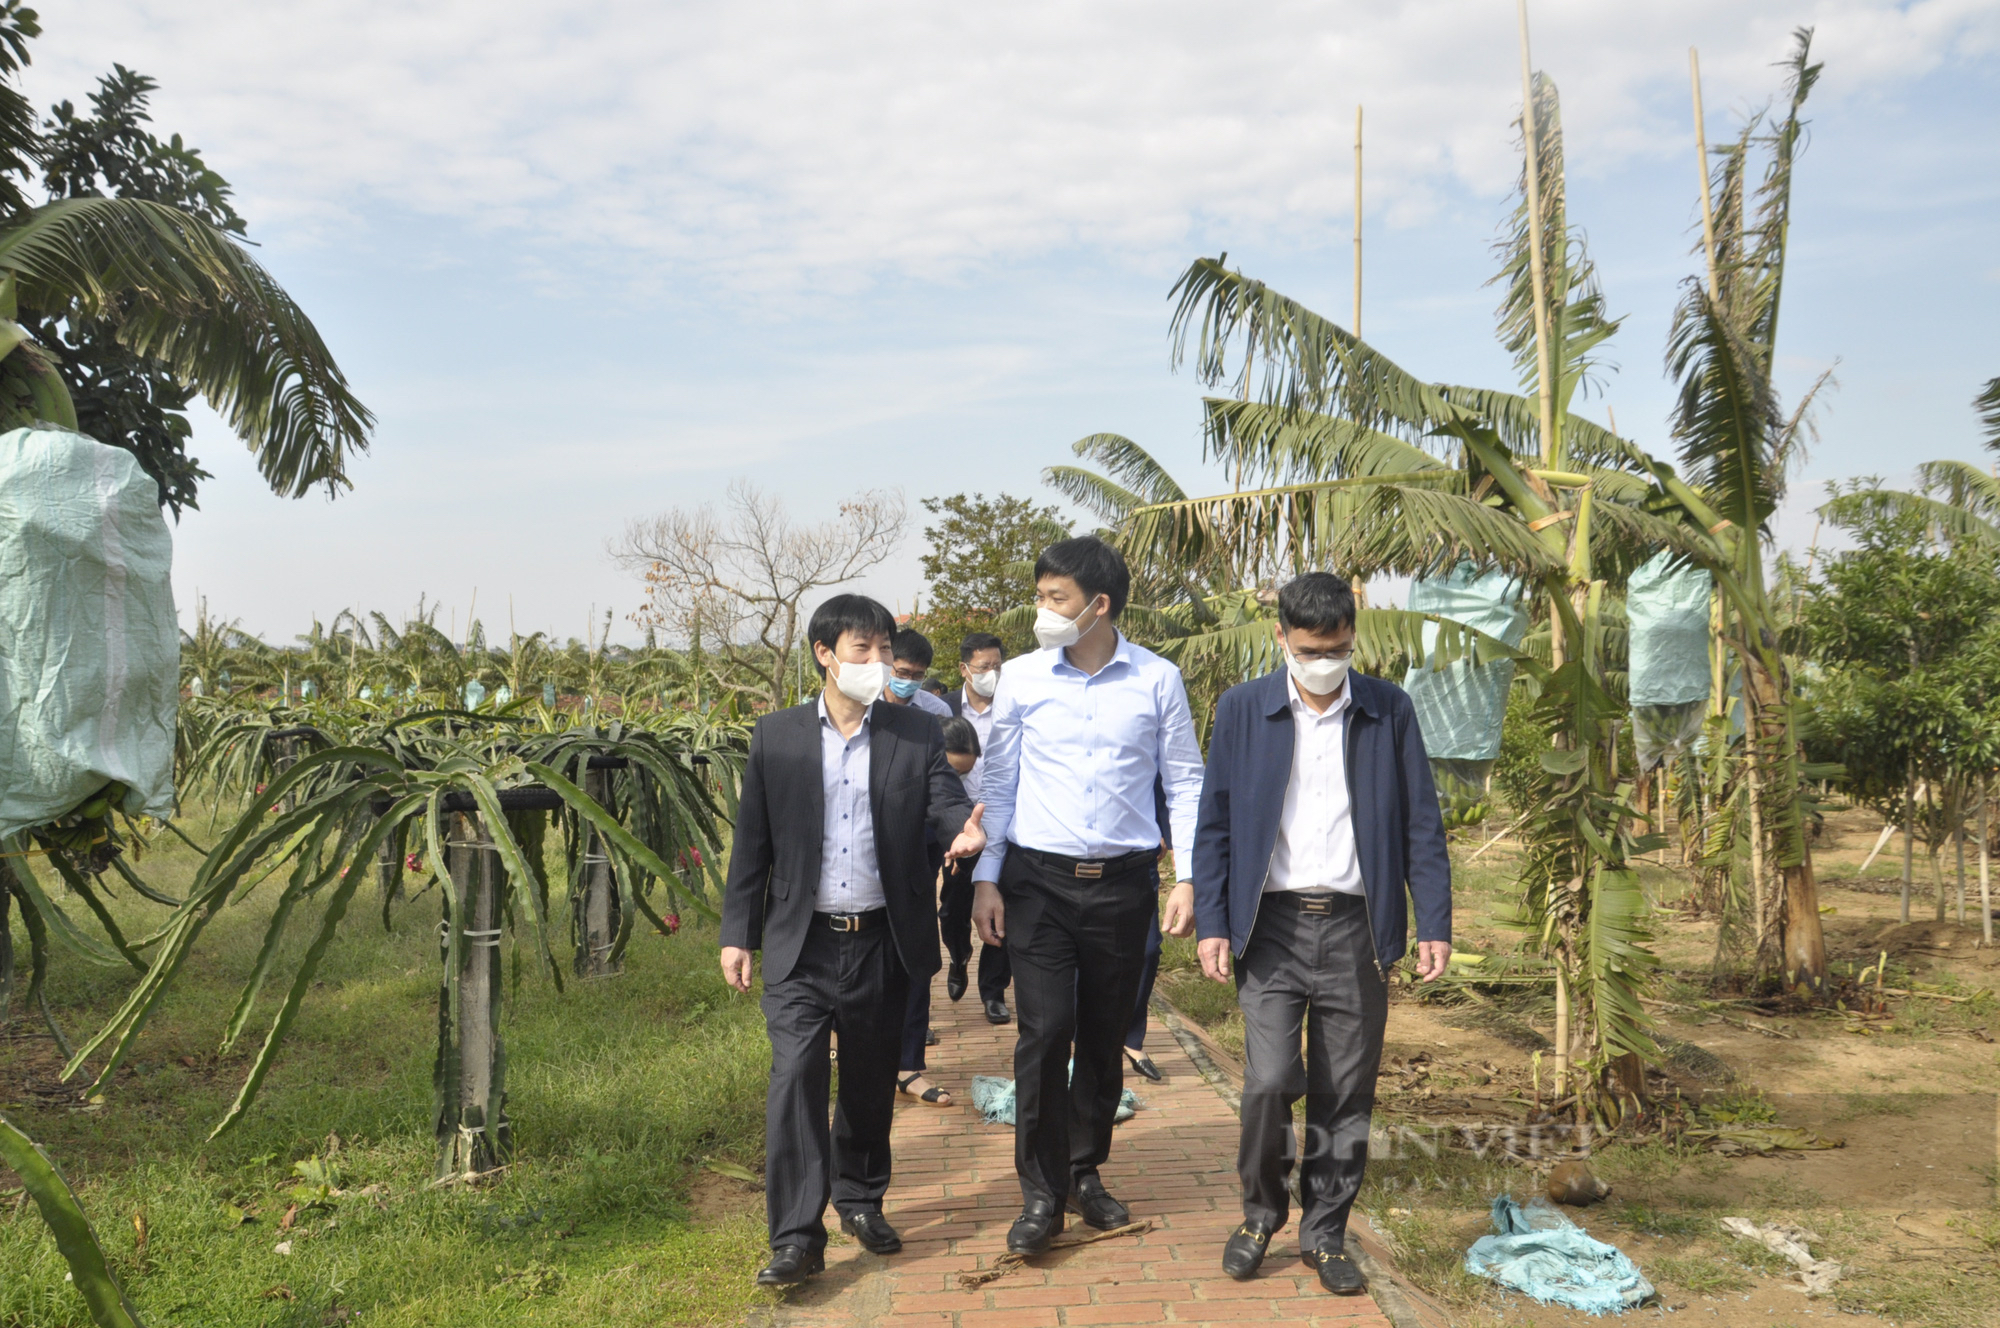 Phó Chủ tịch Hội Nông dân Việt Nam thăm mô hình ở Đông Triều, ấn tượng với xây dựng NTM nơi đây - Ảnh 4.